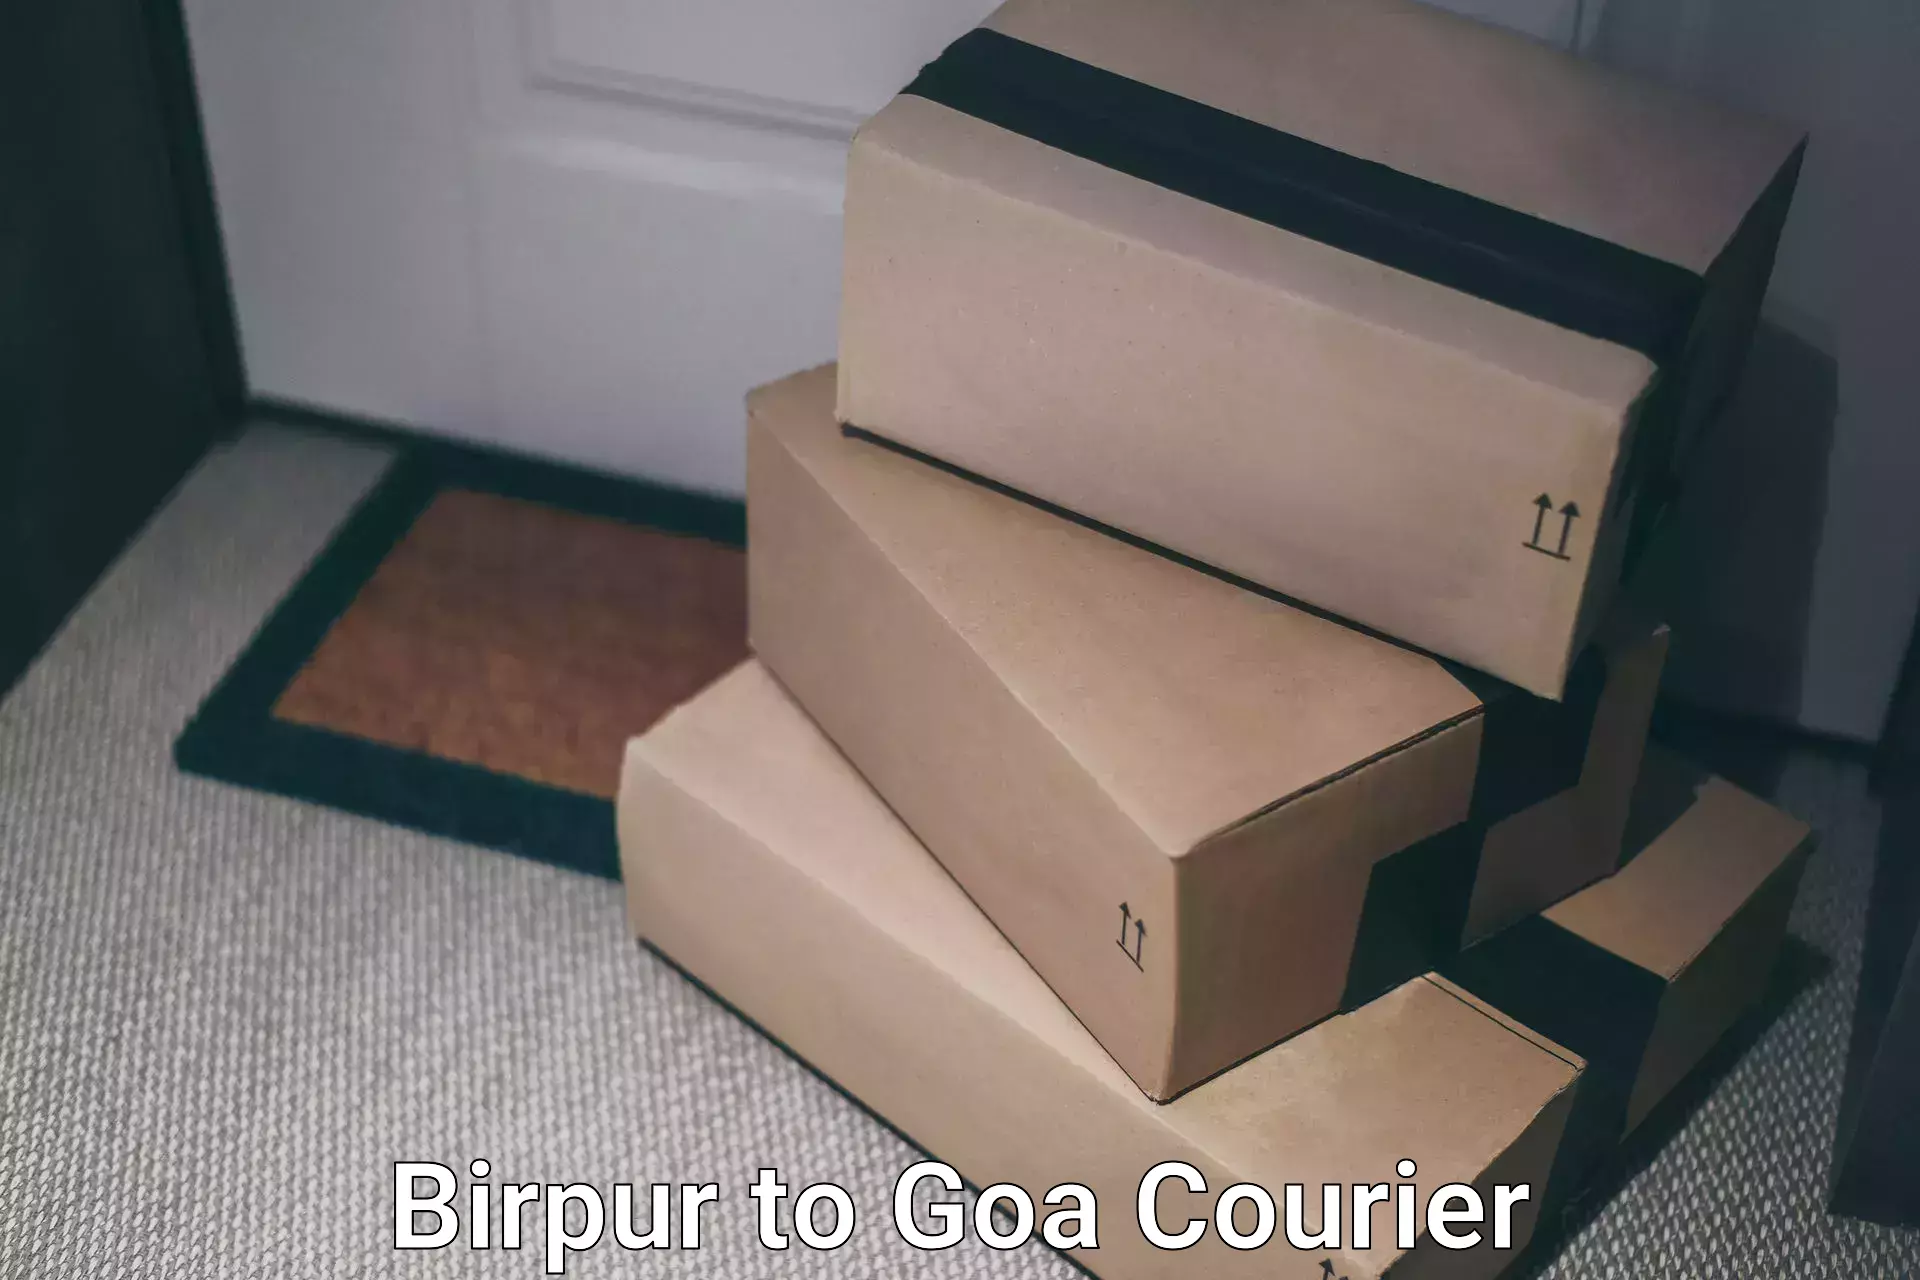 Courier service comparison Birpur to Goa